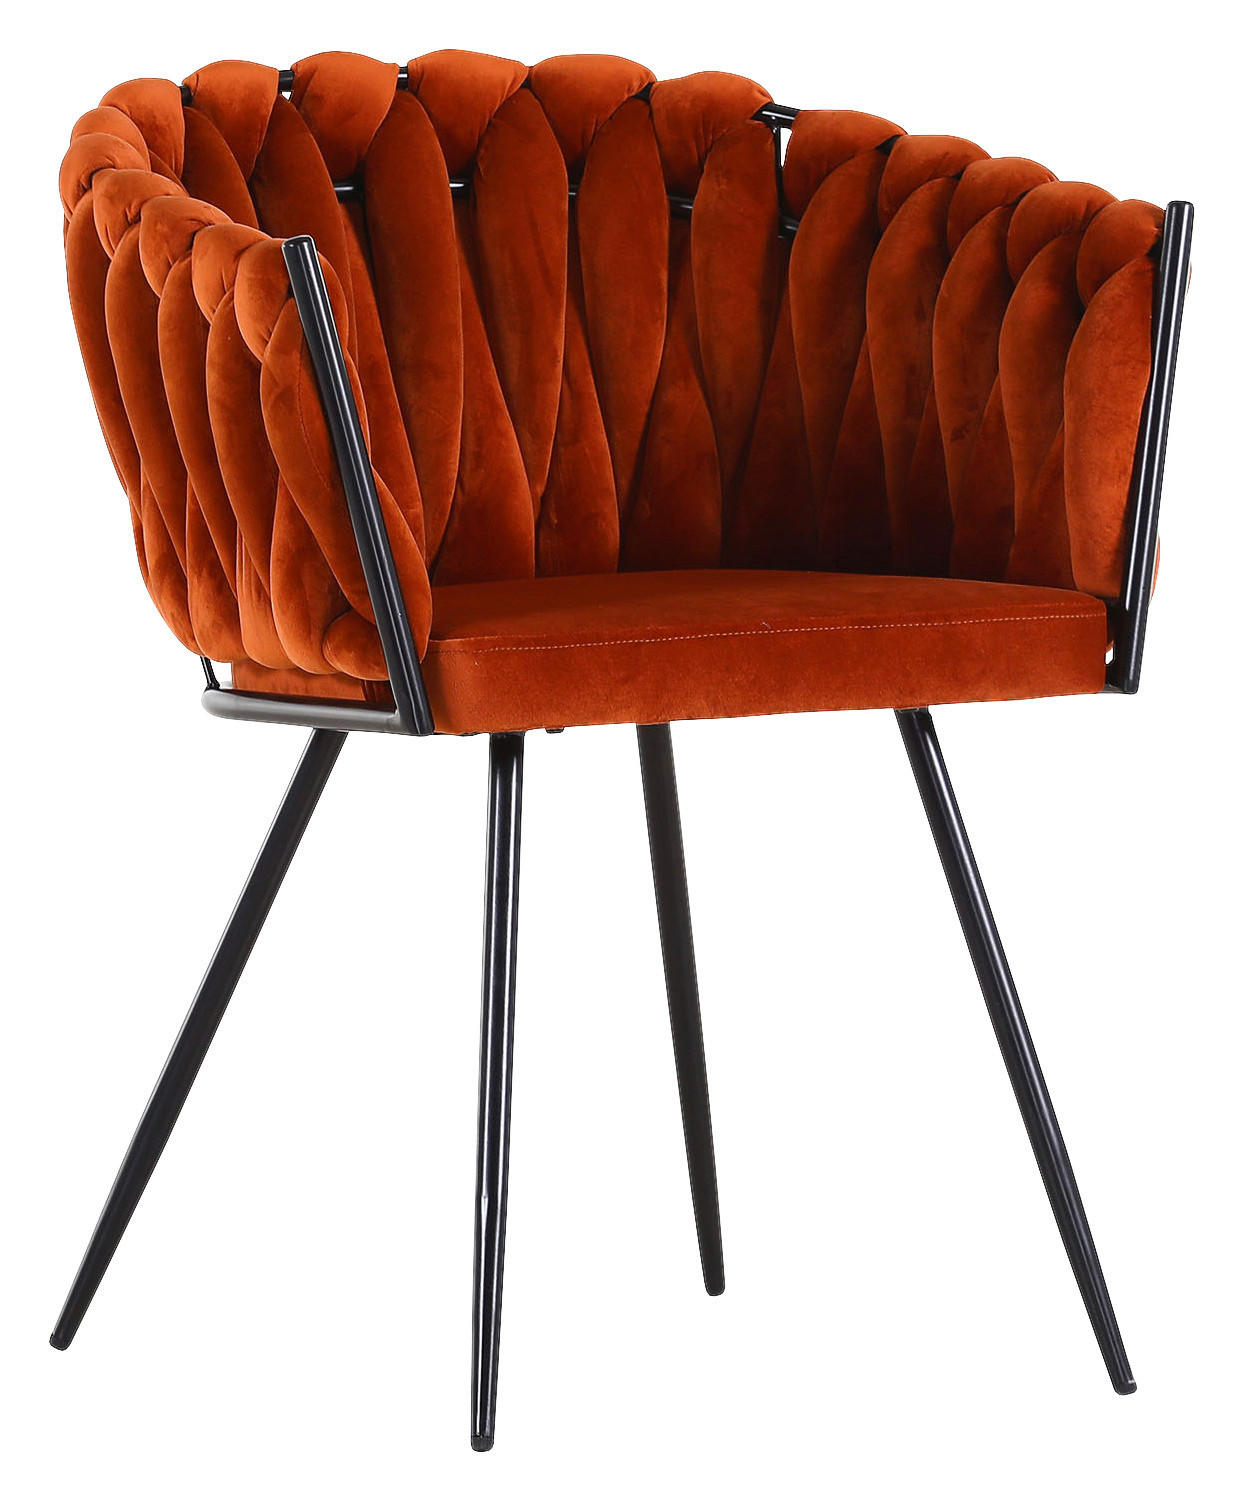 SCAUN CU BRAȚE in portocaliu închis  - portocaliu închis/negru, Lifestyle, metal/textil (60/78/55cm) - Ambia Home